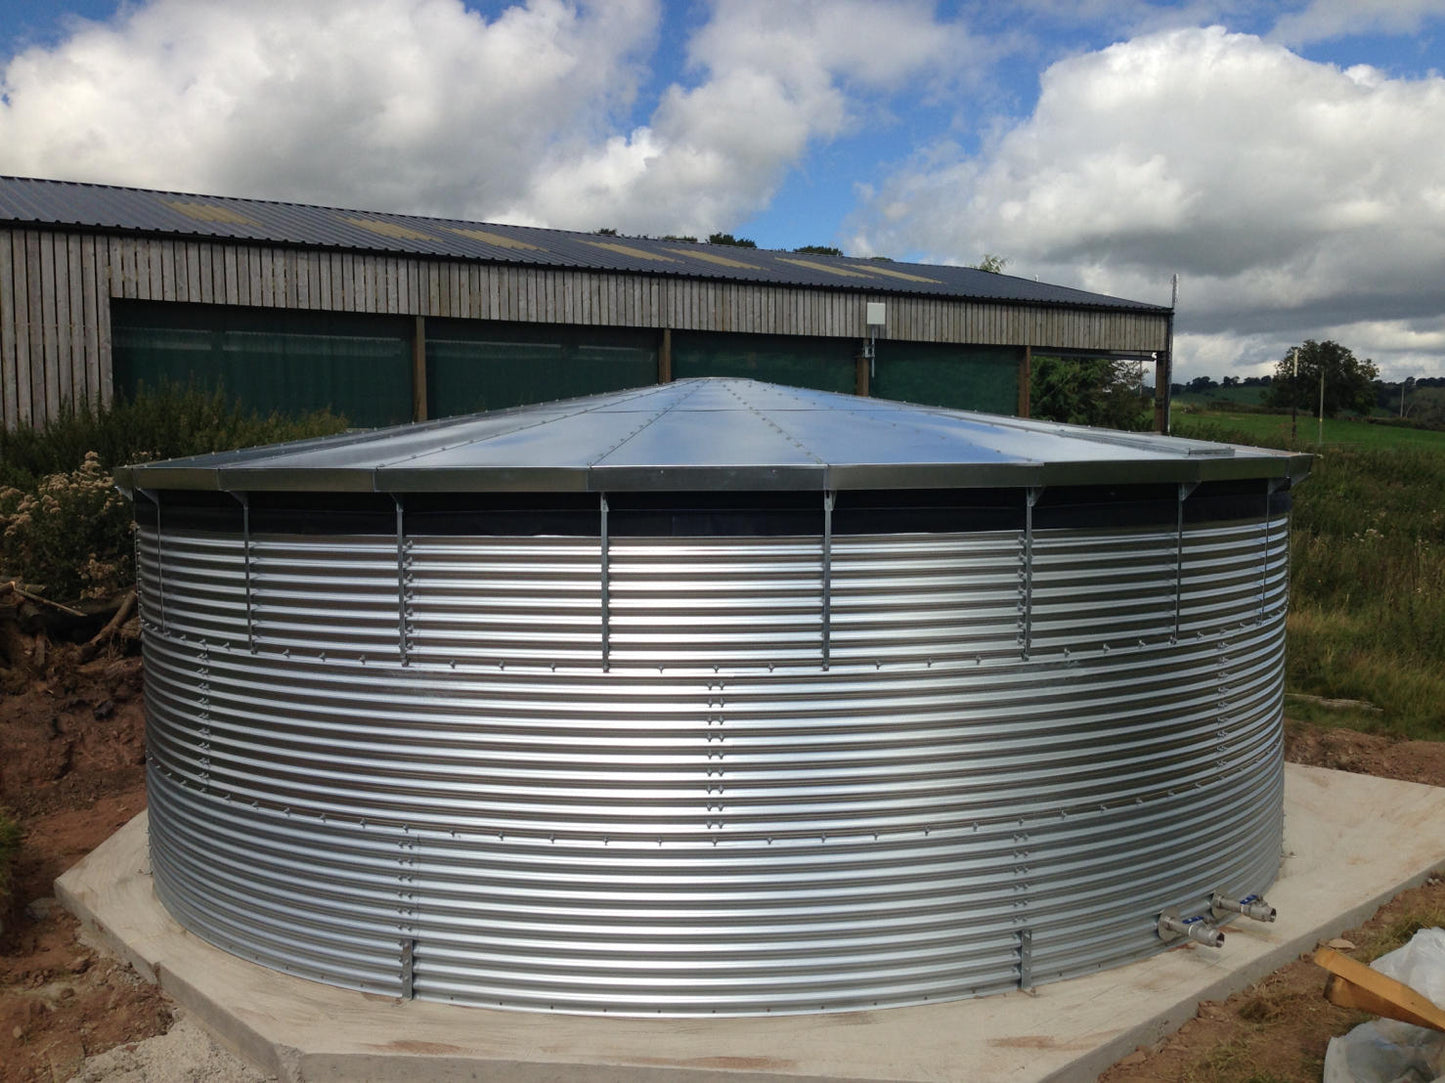 216,200 litre Galvanised Steel Water Tank